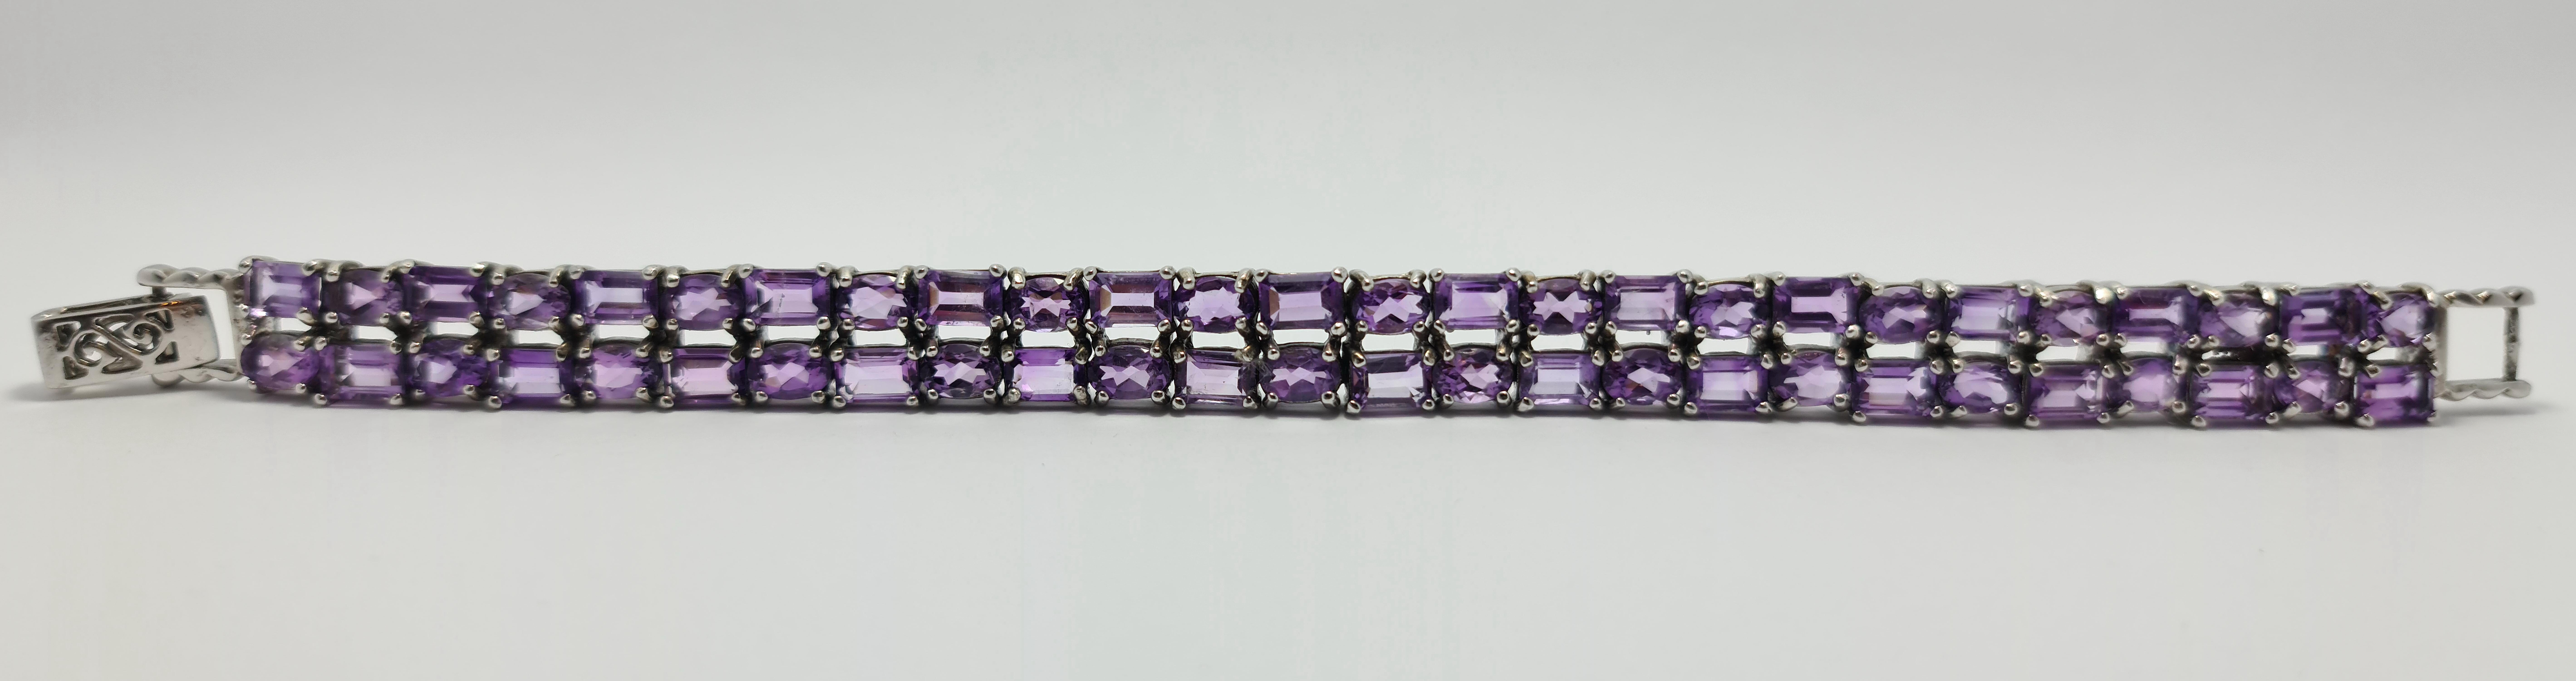 amethyst tennis bracelet in sterling silver